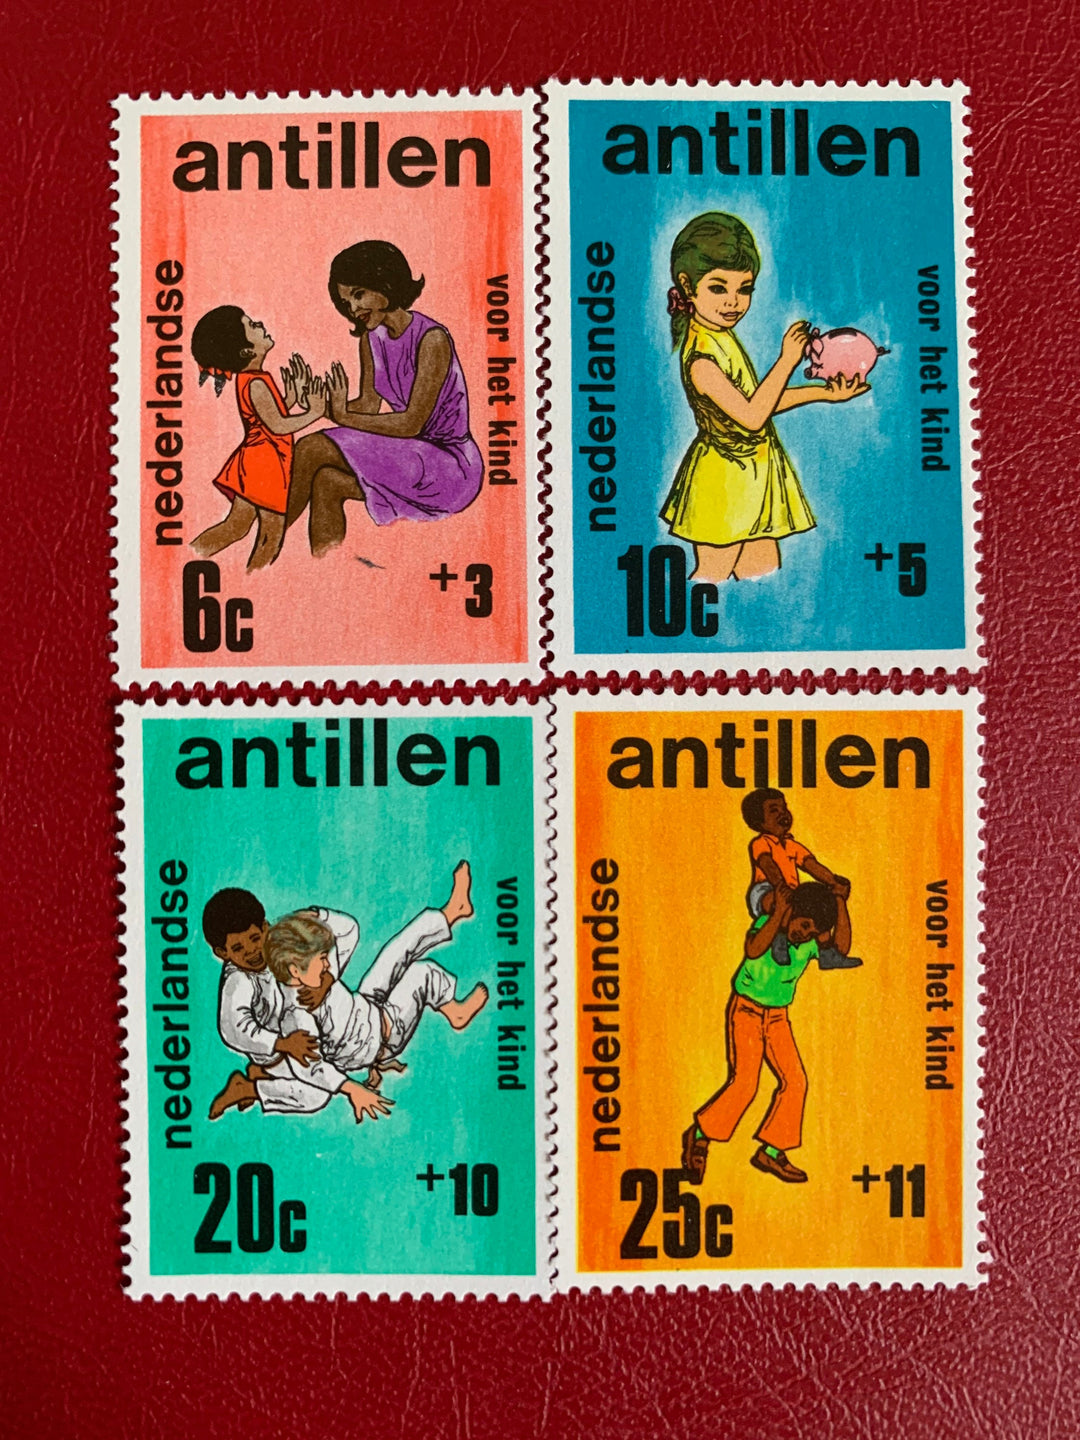 Netherlands Antilles- Original Vintage Postage Stamps- 1970 Children